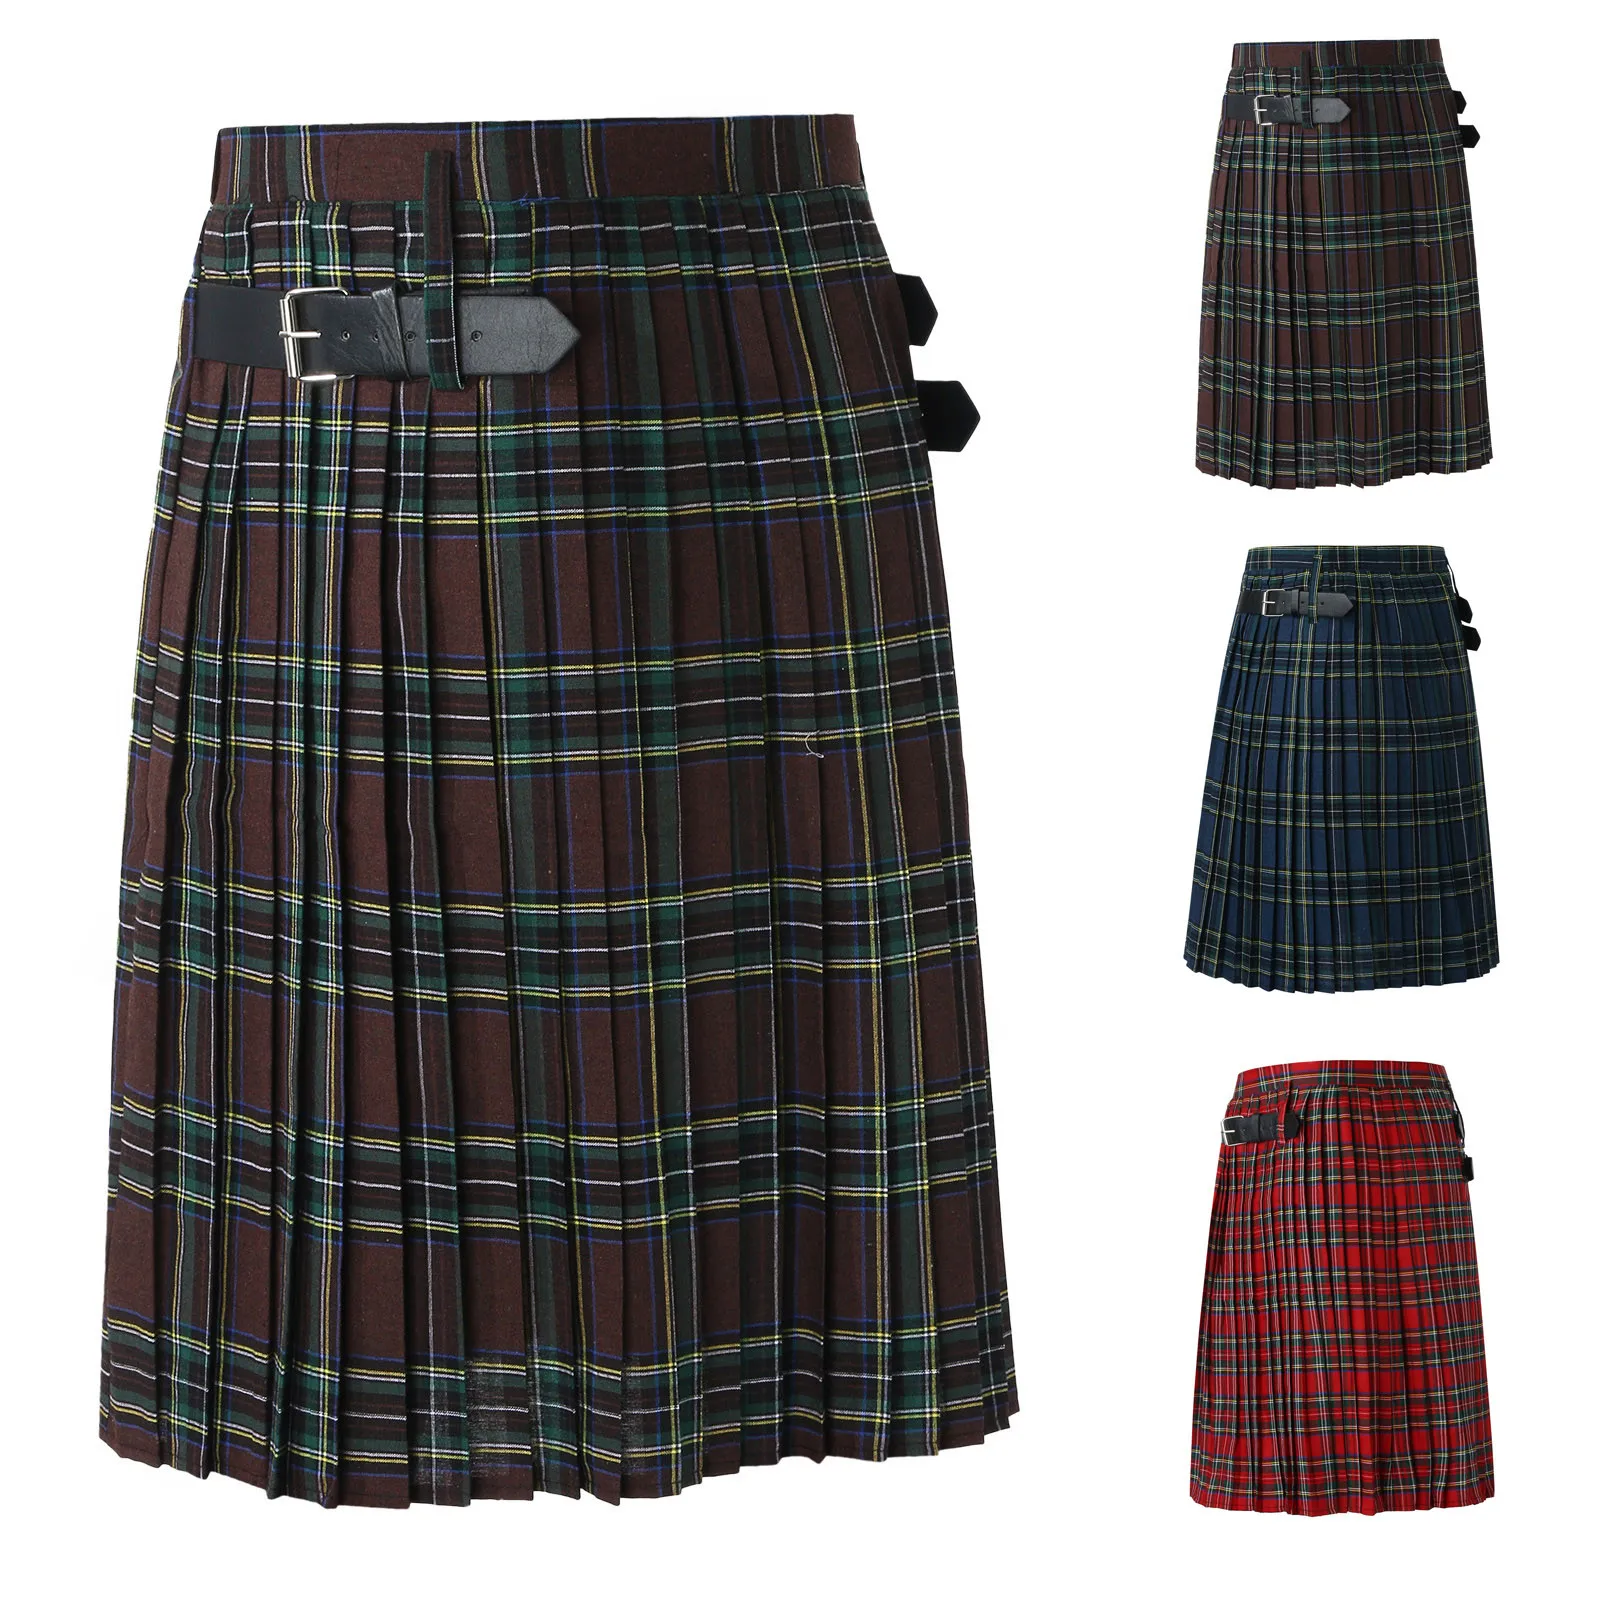 Męskie plisowana spódnica w kratę szkockie tradycyjne modny kostium spódnica sceniczna casualowe w szkockim stylu w kratę w stylu Retro